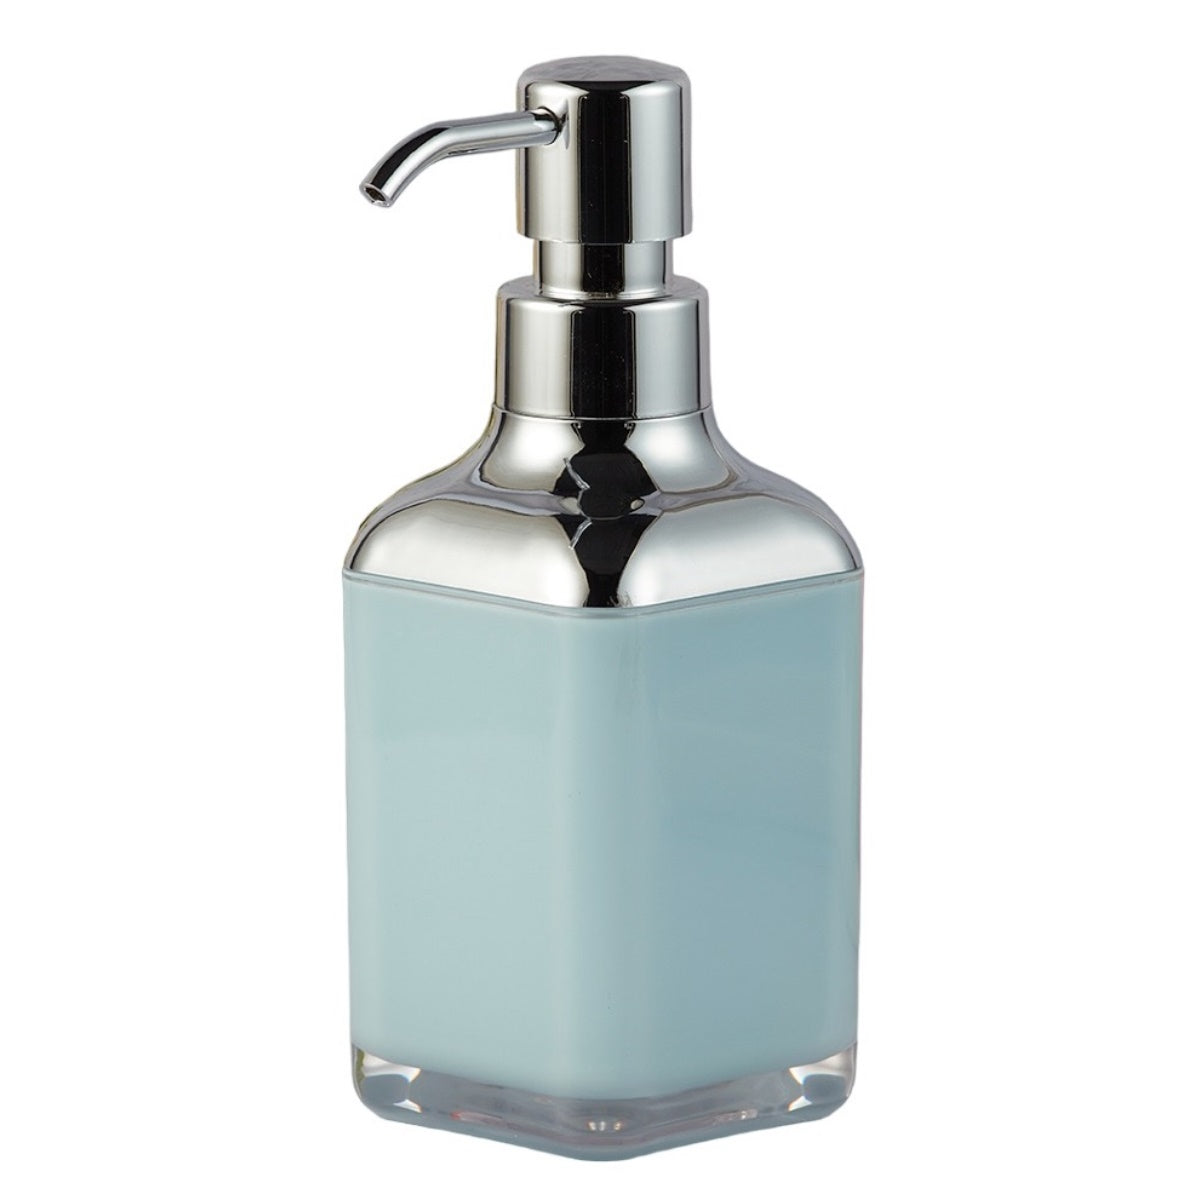 Acrylic Soap Dispenser Pump for Bathroom for Bath Gel, Lotion, Shampoo (9923)